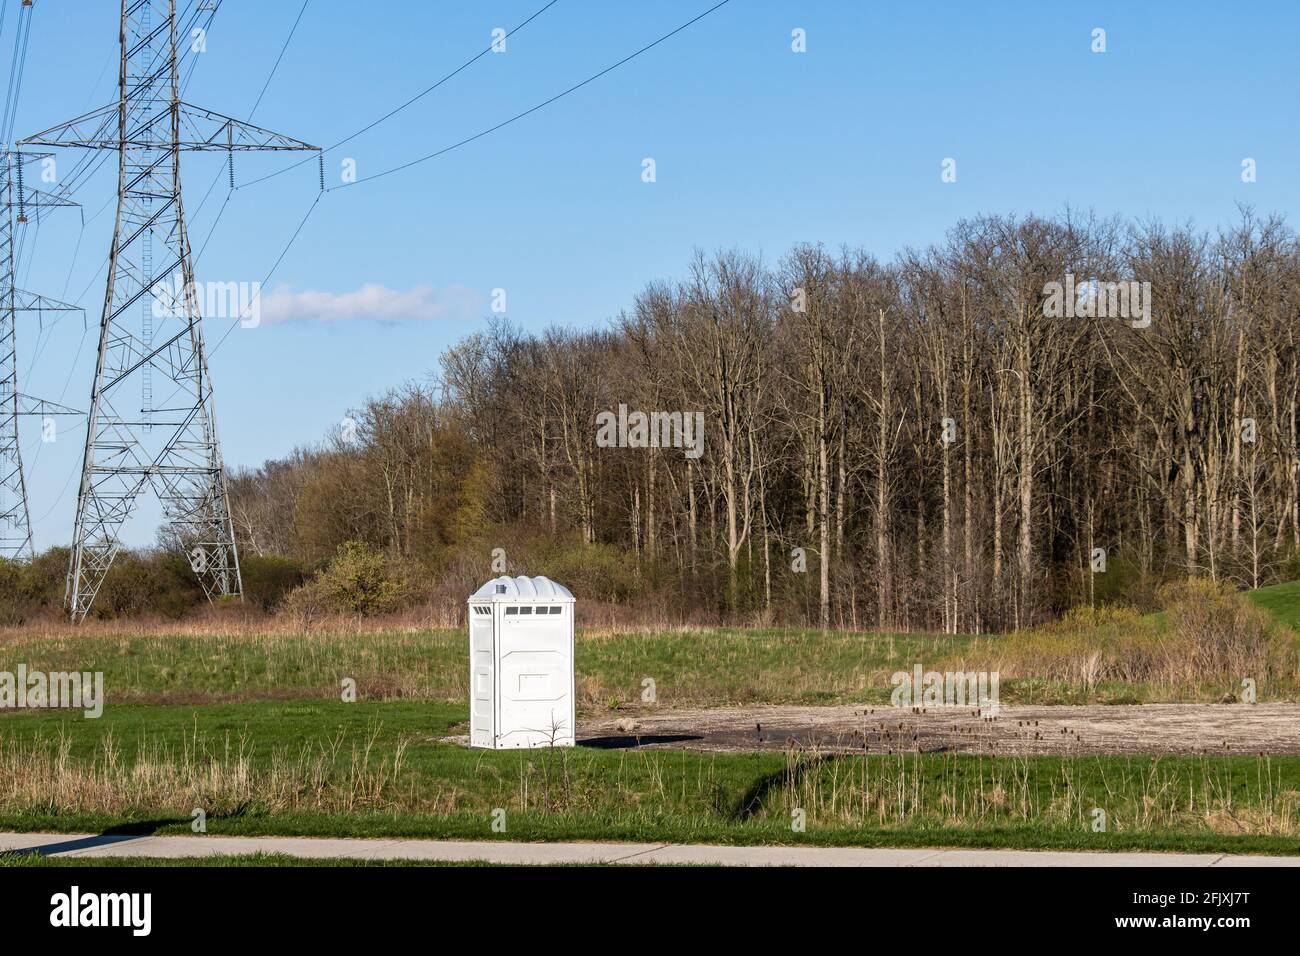 toilette portable blanche au bout d'un parking et à côté d'un champ et de tours hydro-électriques. Forêt en arrière-plan. Banque D'Images